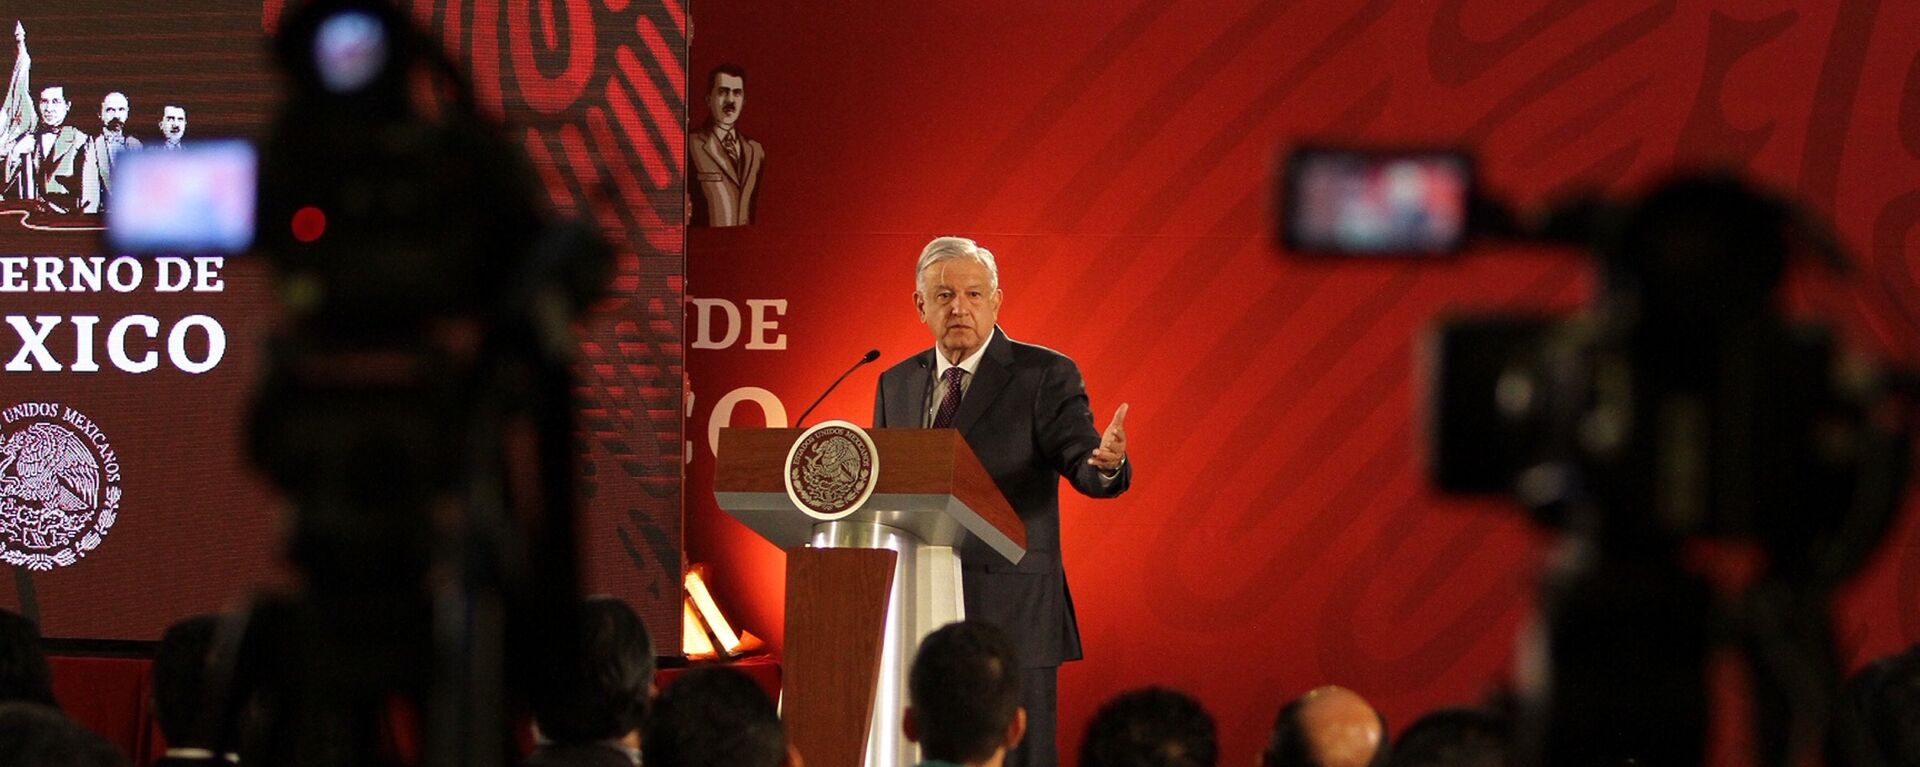 Andrés Manuel López Obrador, presidente de México - Sputnik Mundo, 1920, 18.06.2021